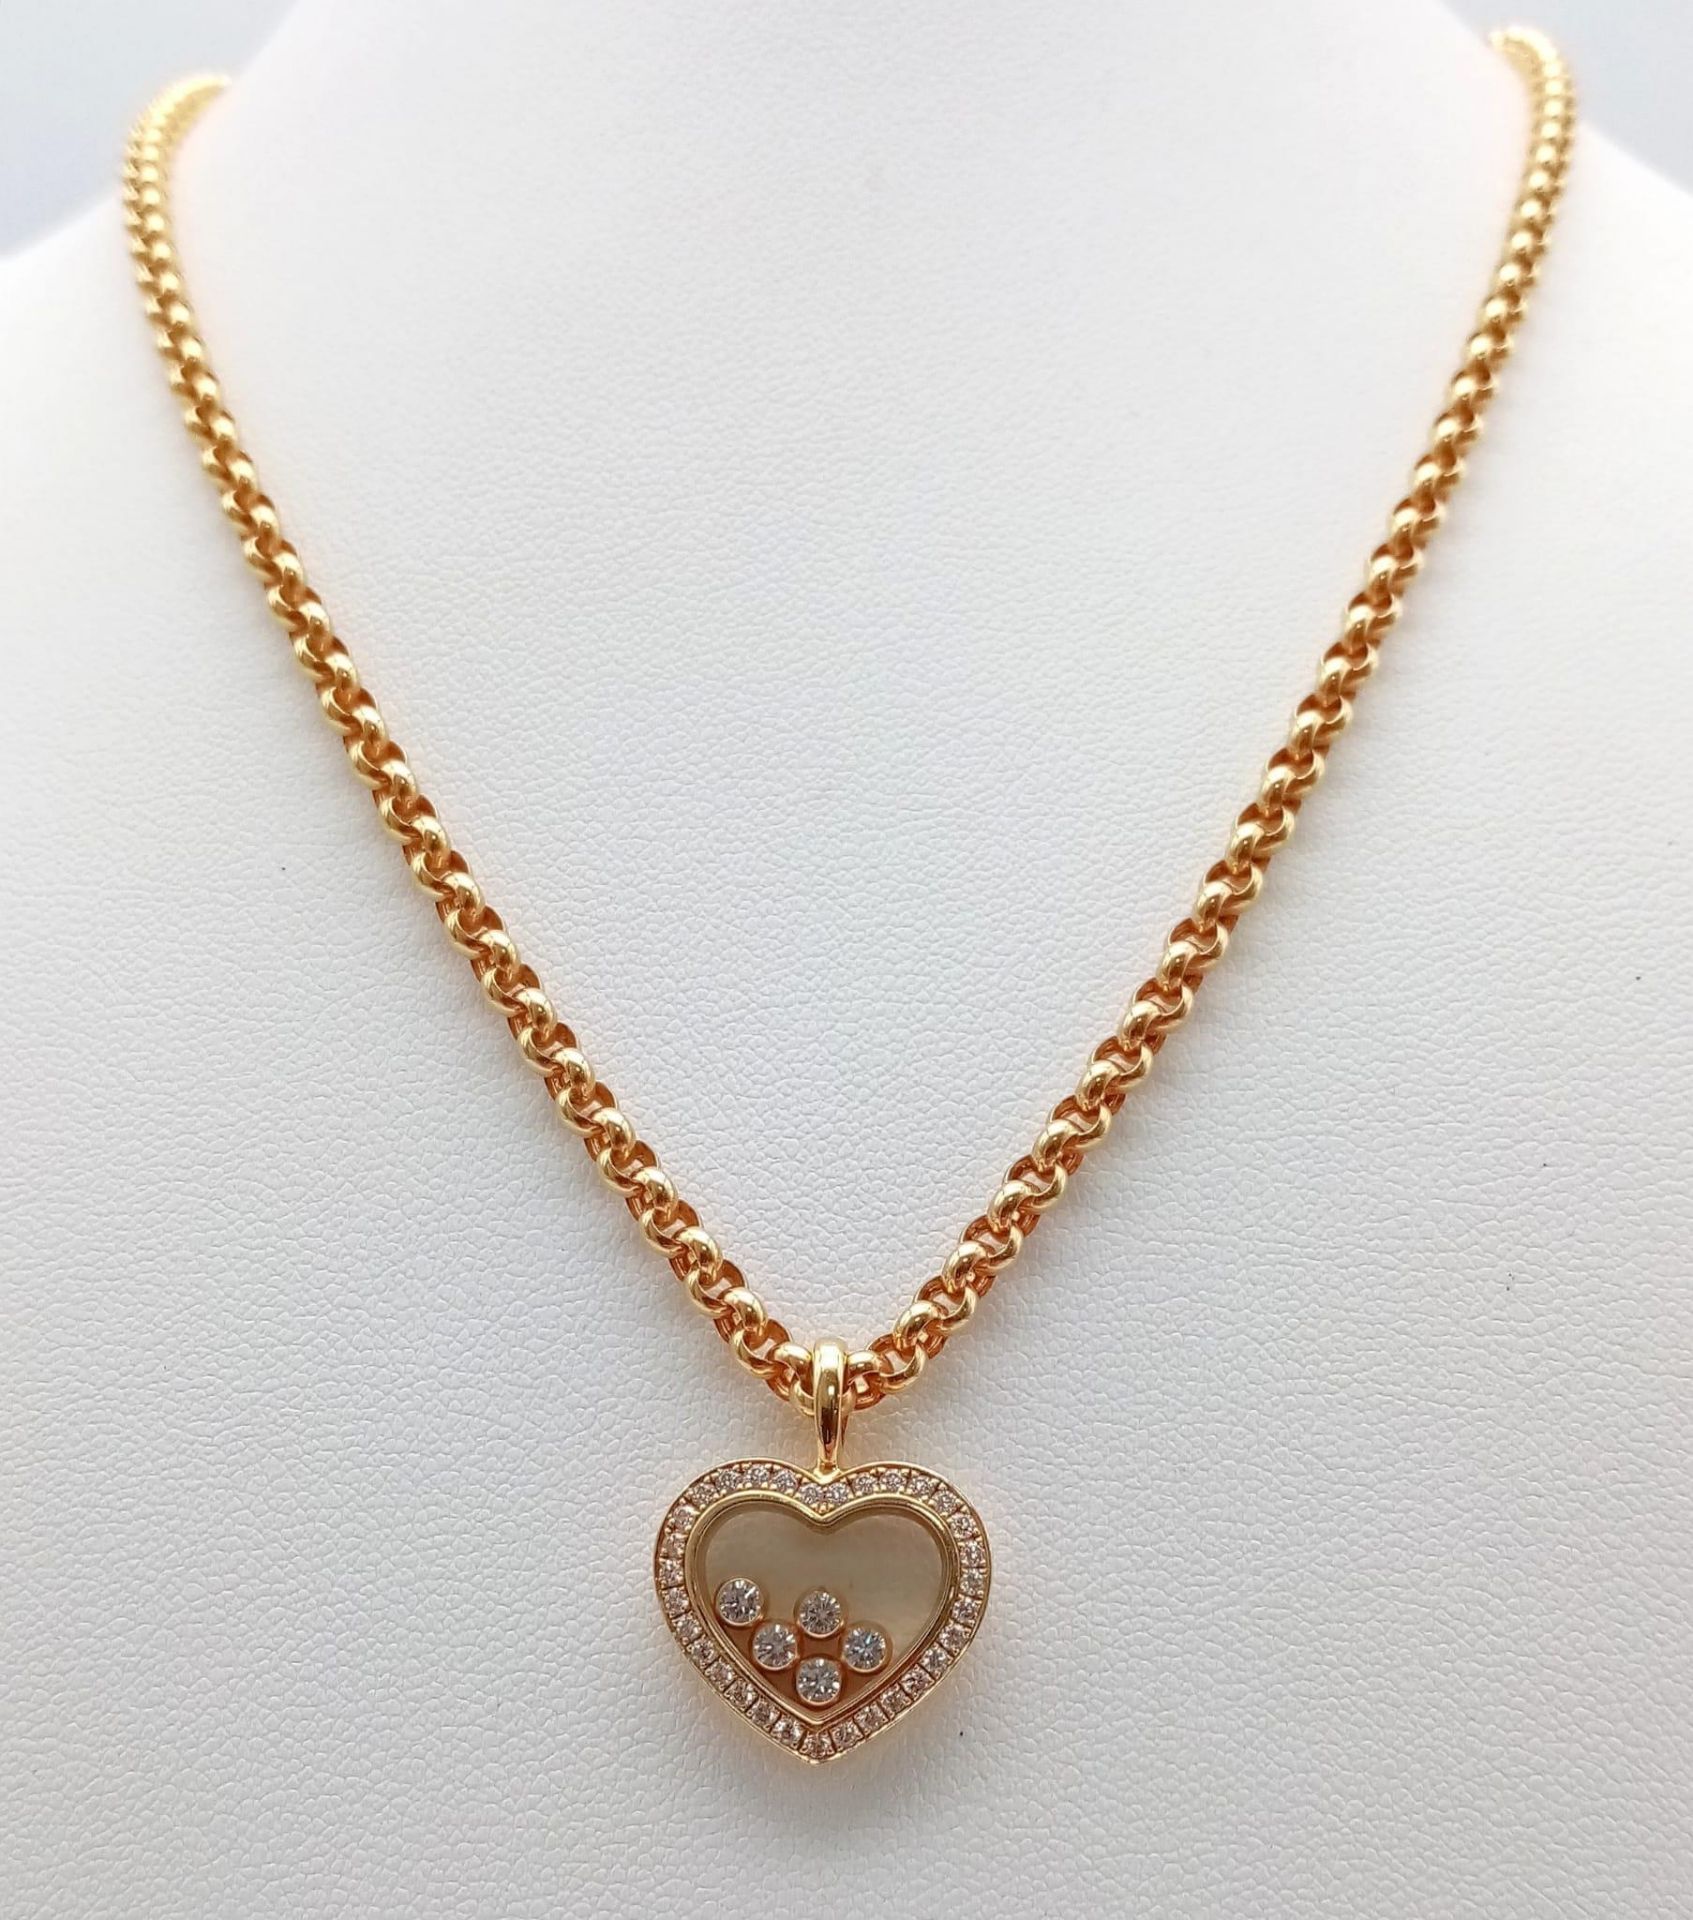 A Chopard 18K Yellow Gold and Floating Diamond Heart Pendant on an 18K Yellow Gold Belcher Link - Bild 4 aus 7